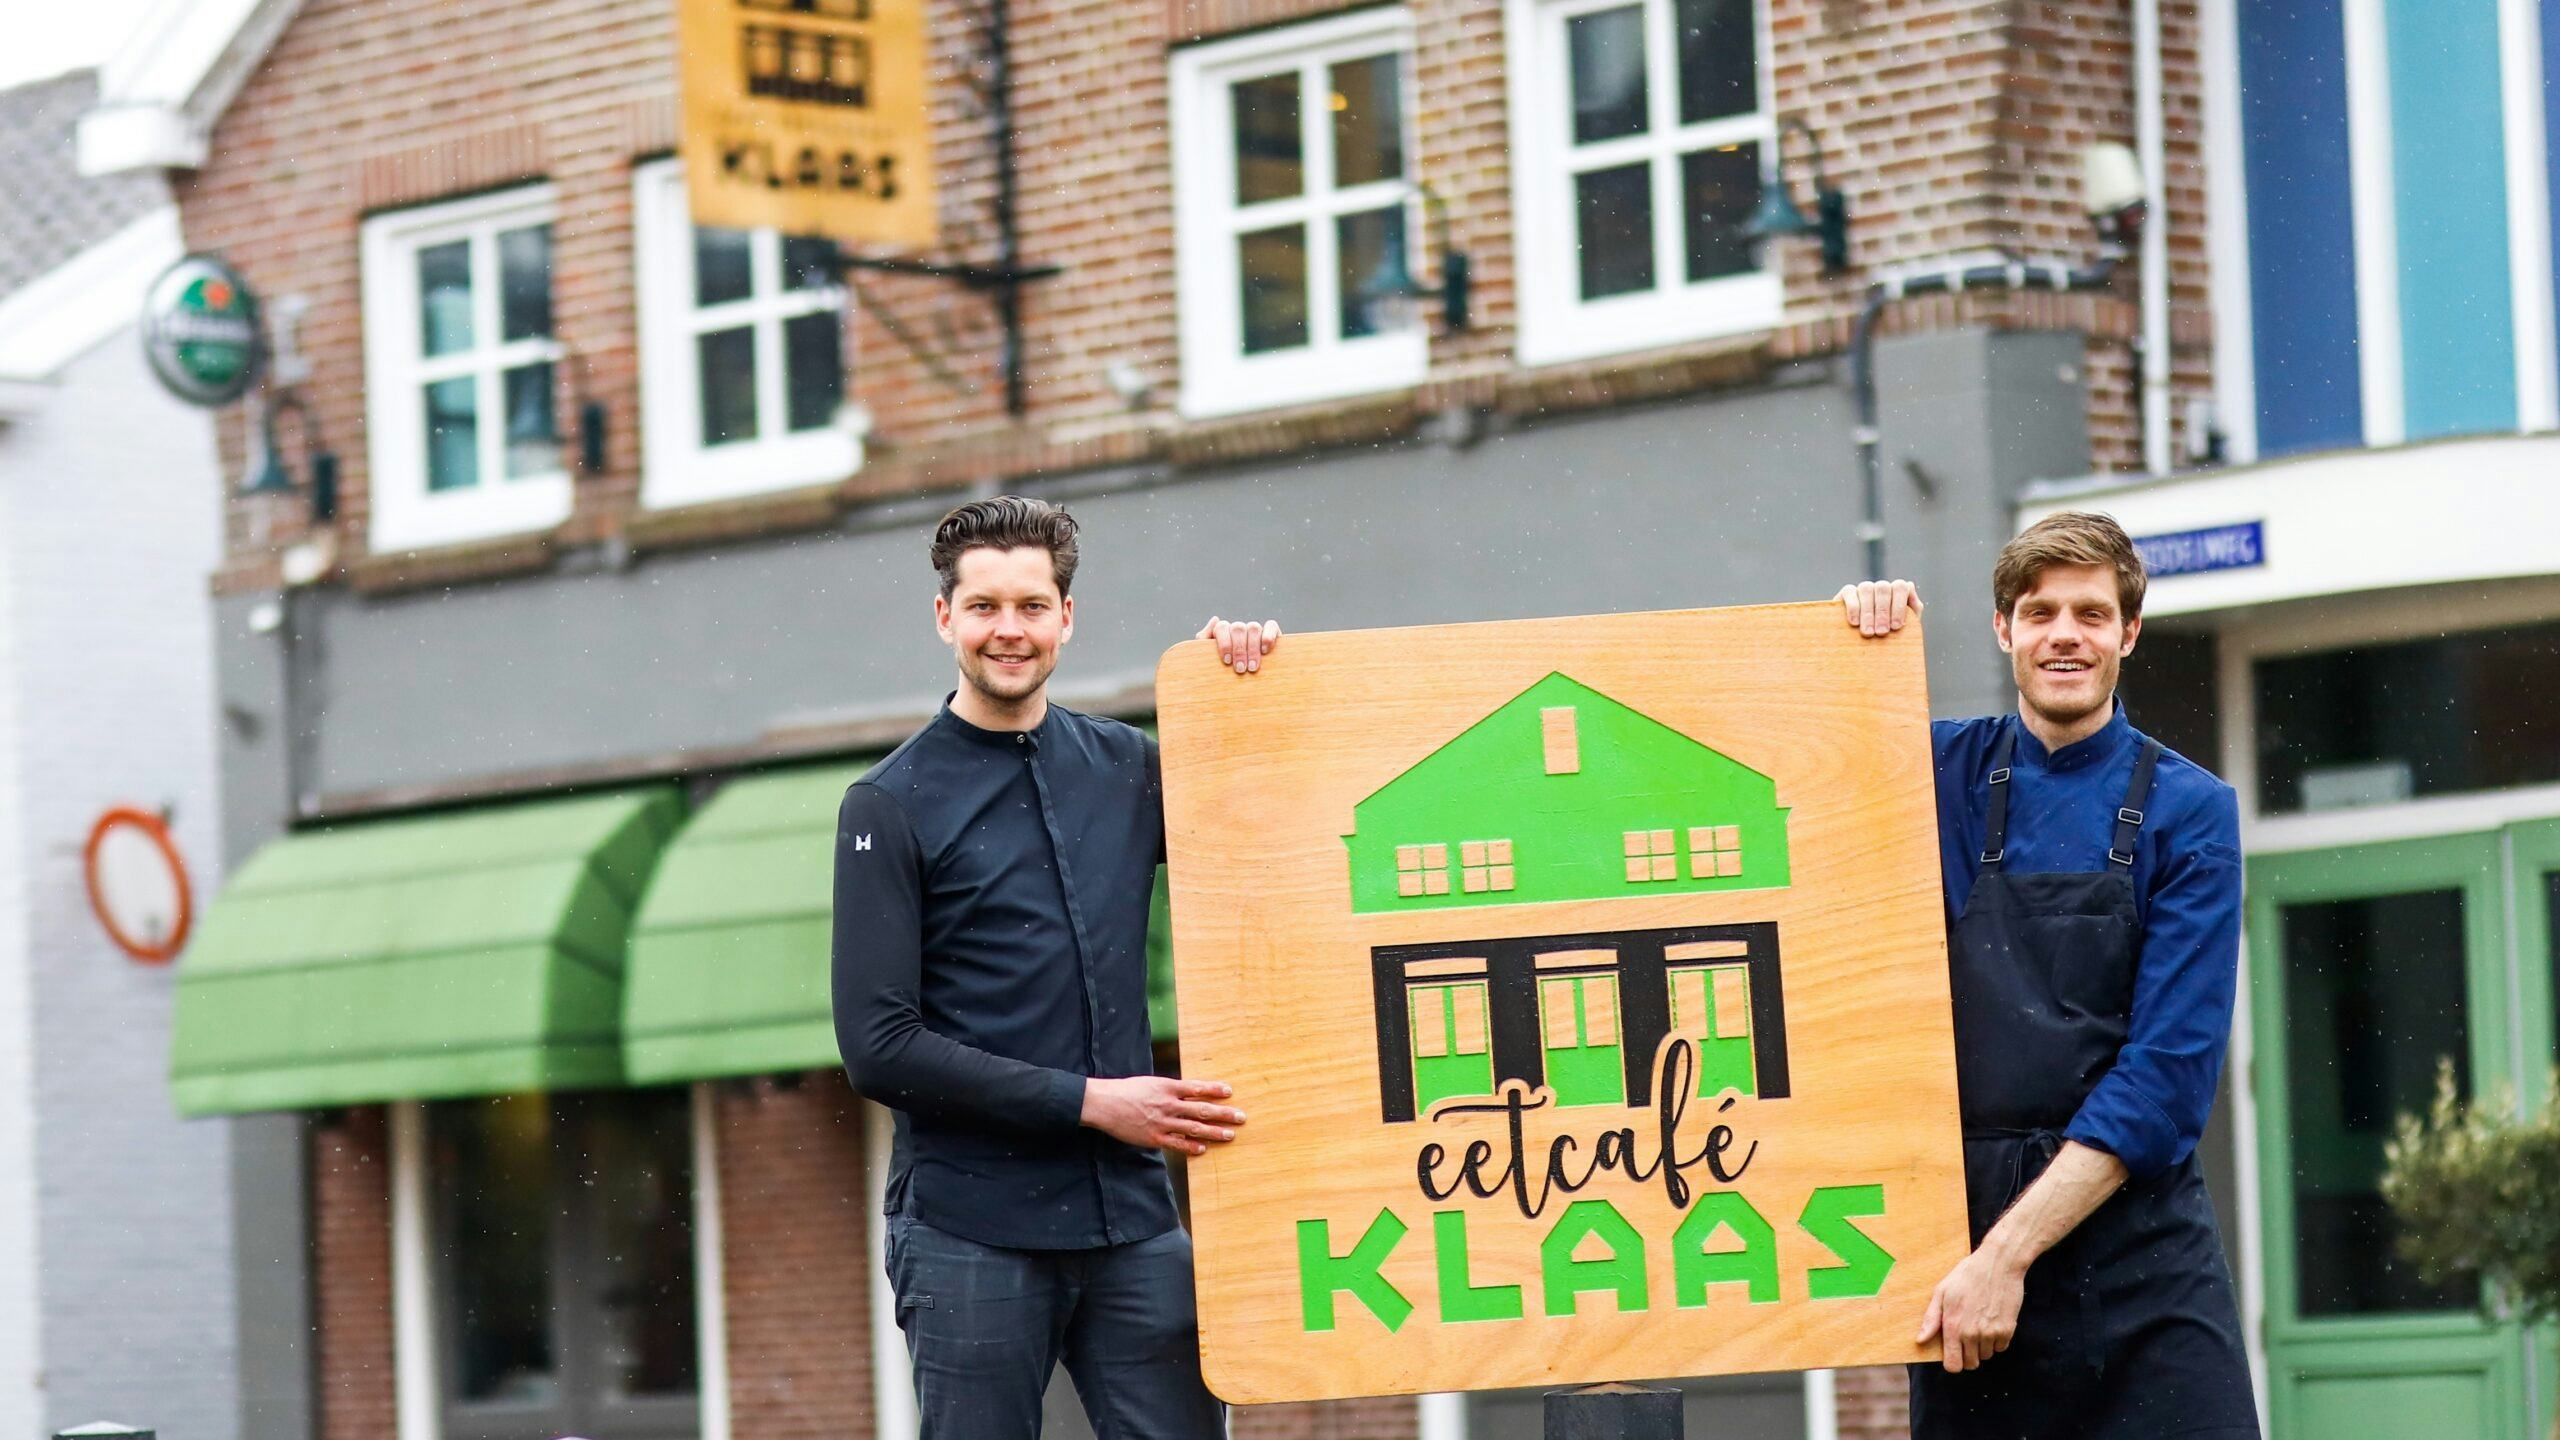 Bib-restaurant Klaas in de verkoop